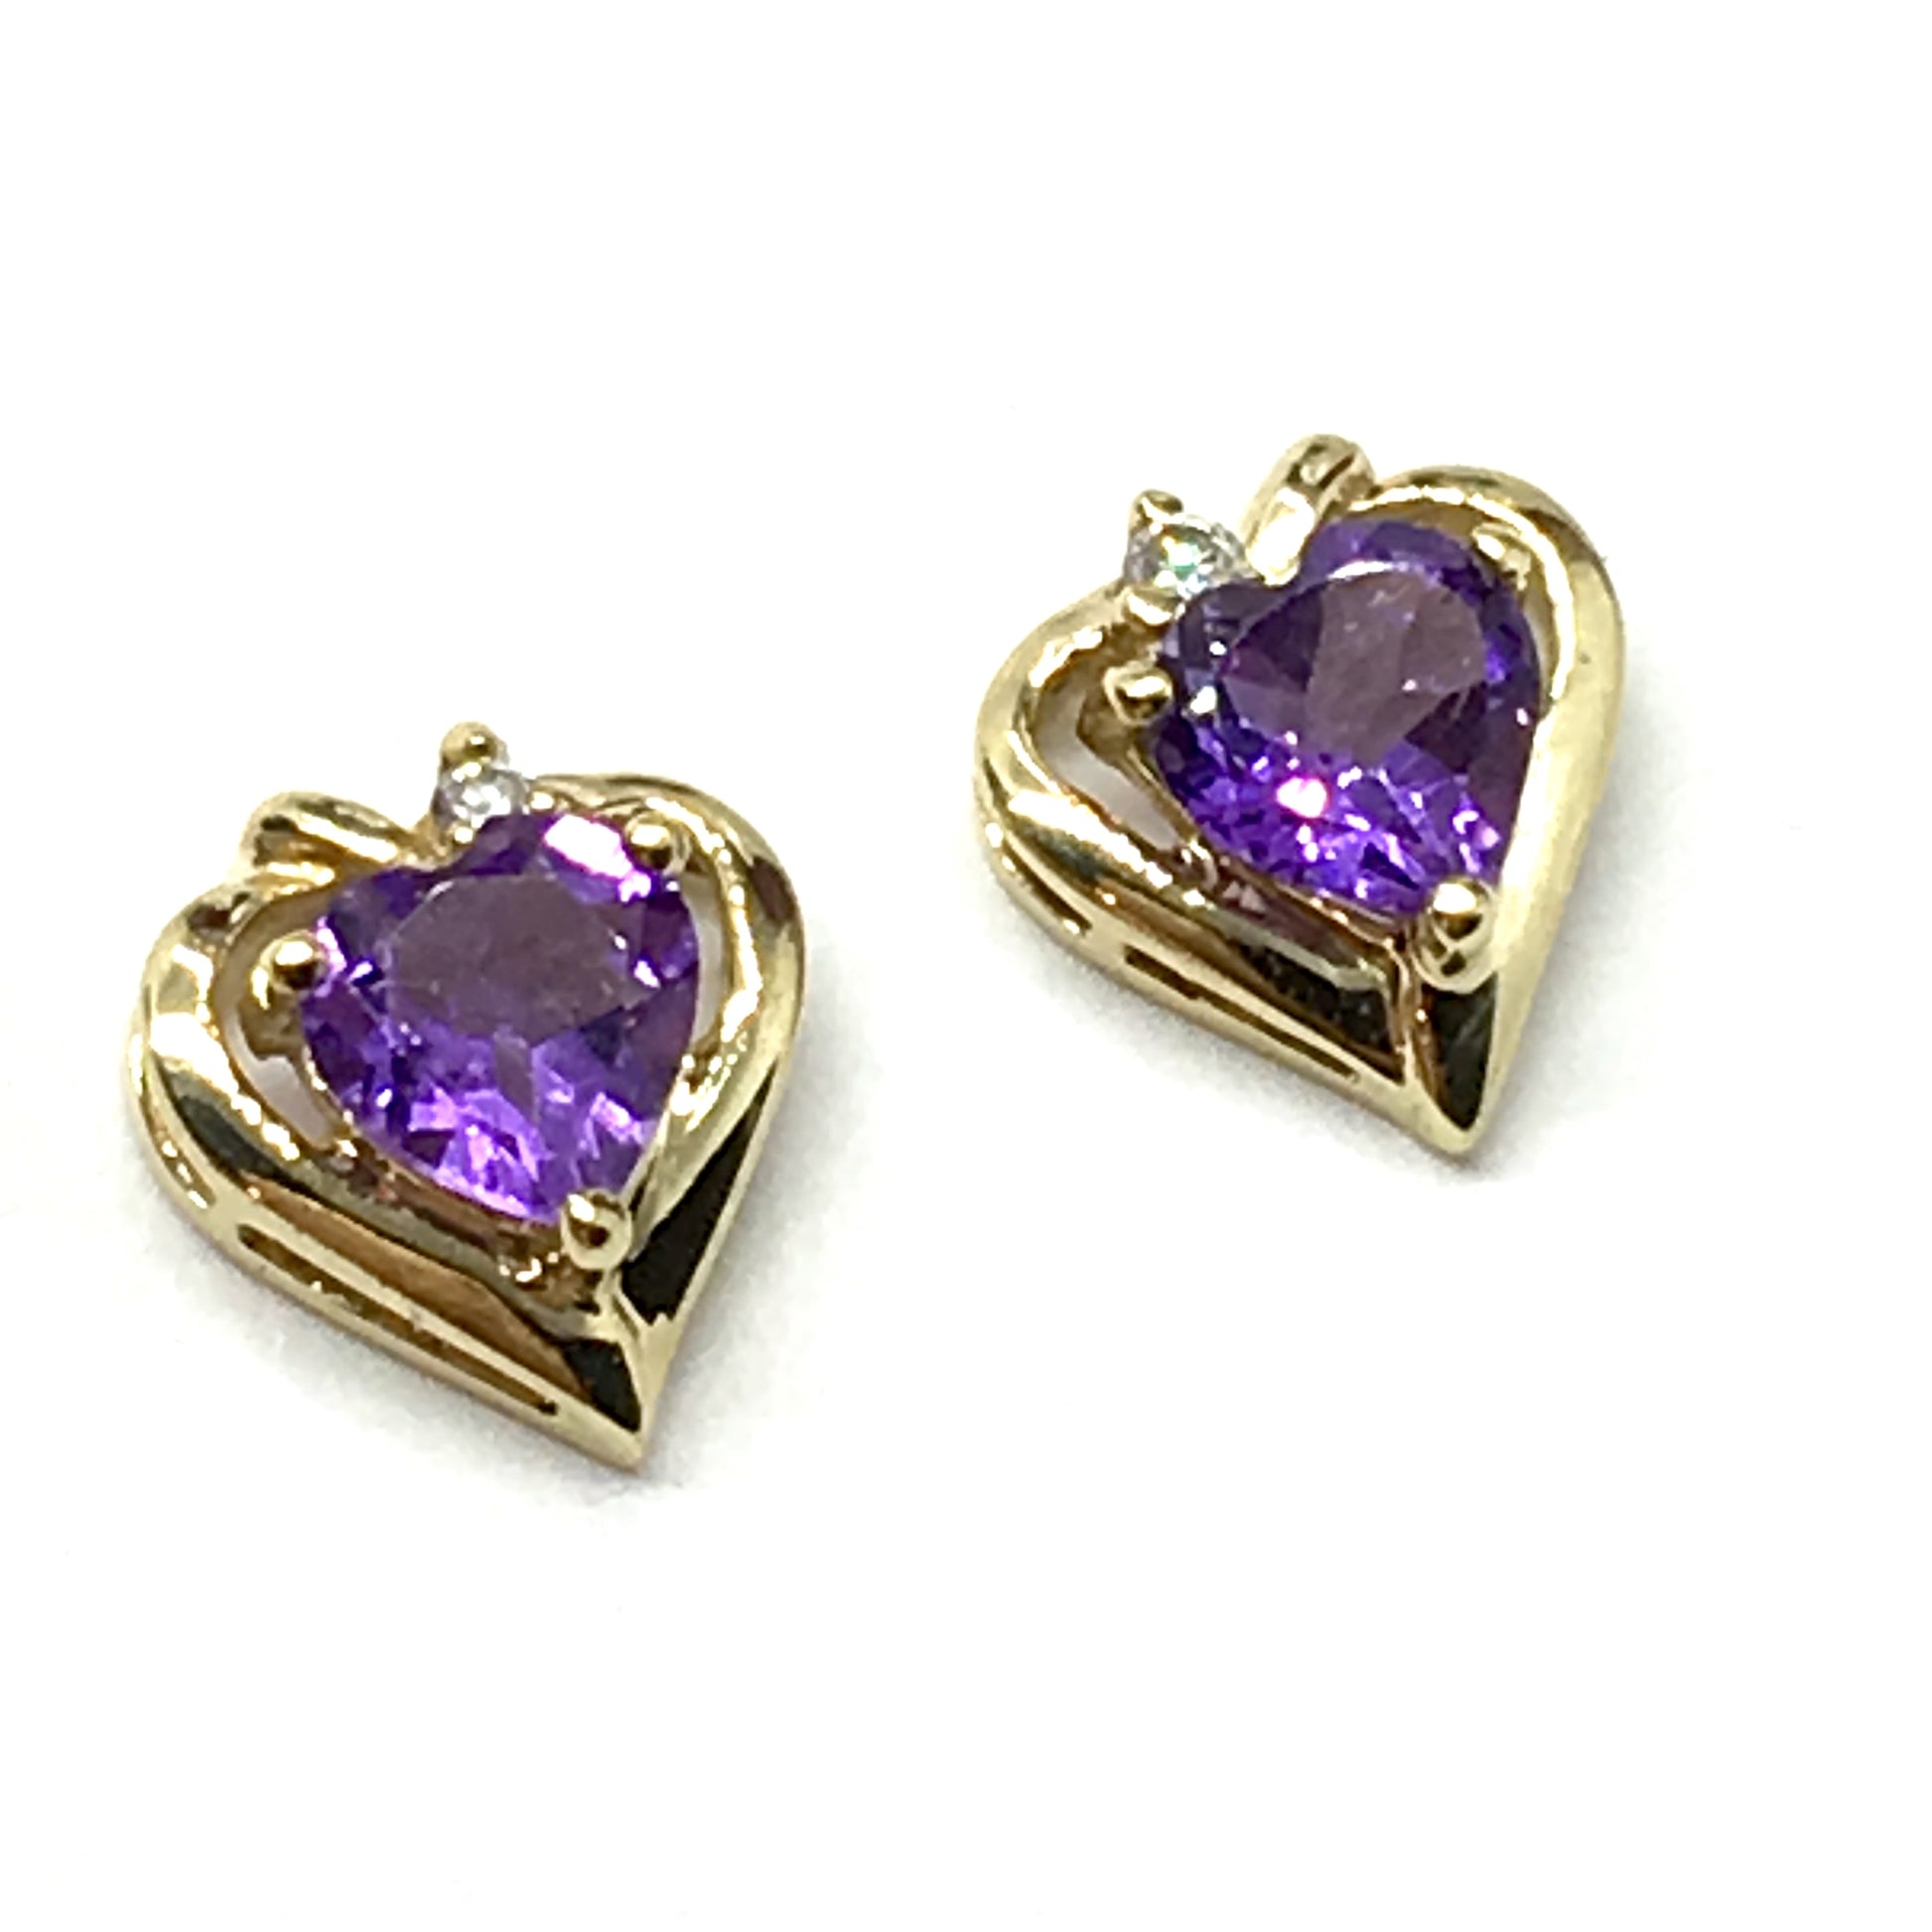 Earrings | 10k Gold Heart Design Amethyst Gemstone Stud Earrings